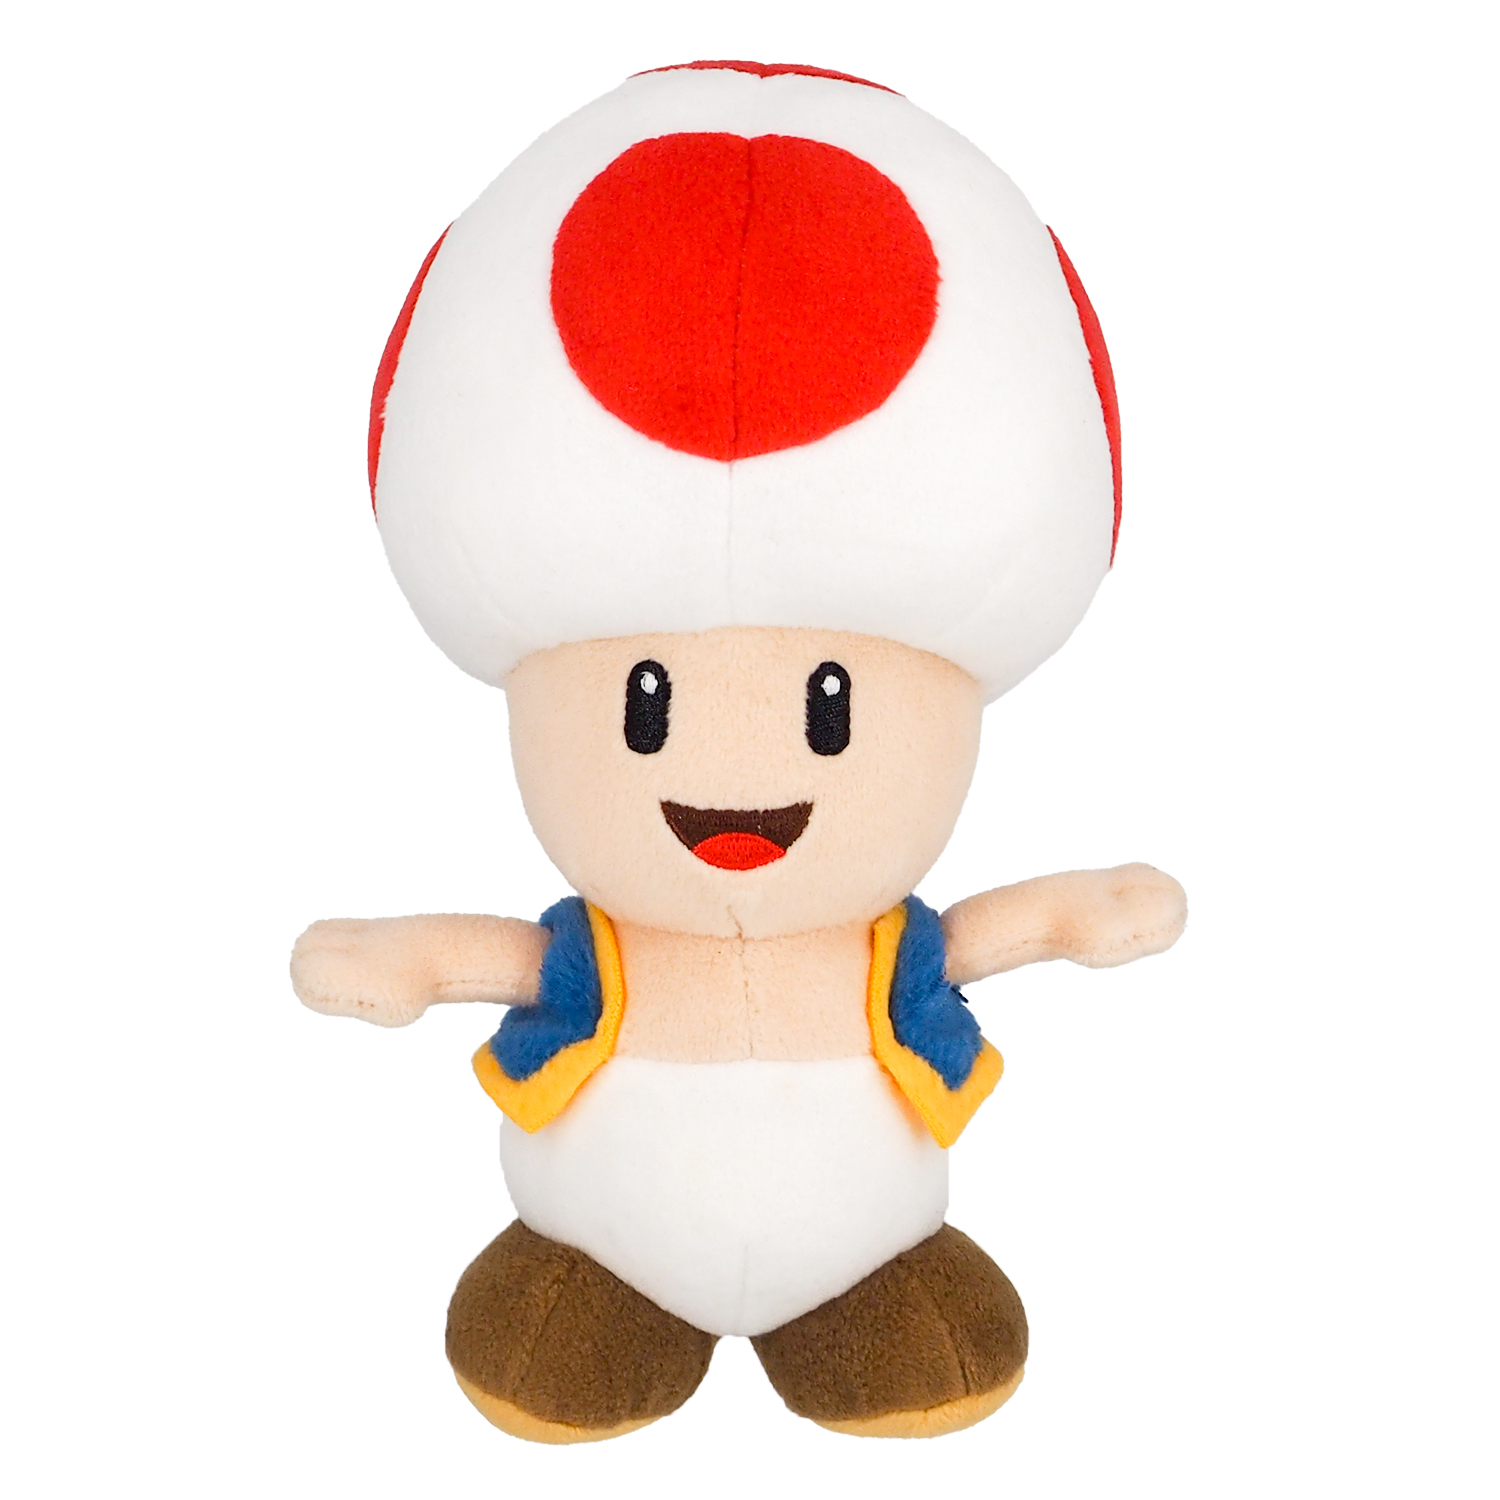 Super Mario - Toad rouge